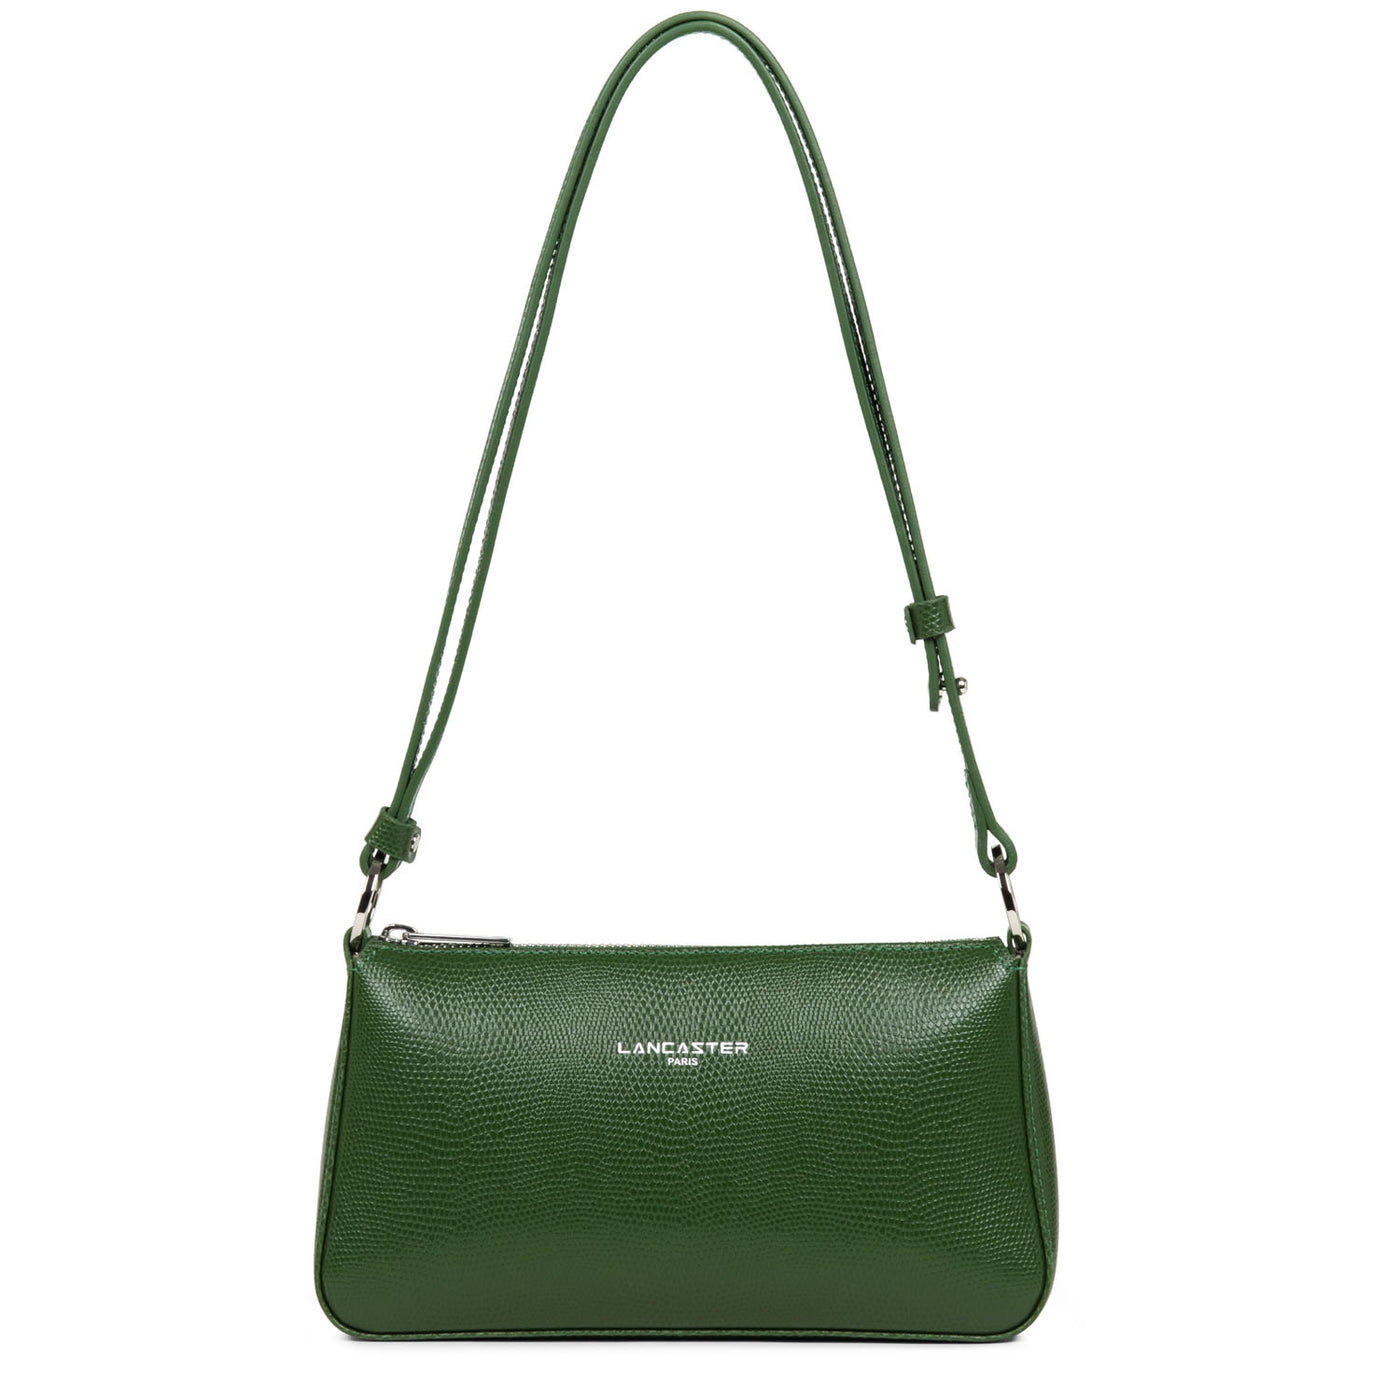 sac trotteur - lucertola #couleur_vert-pin